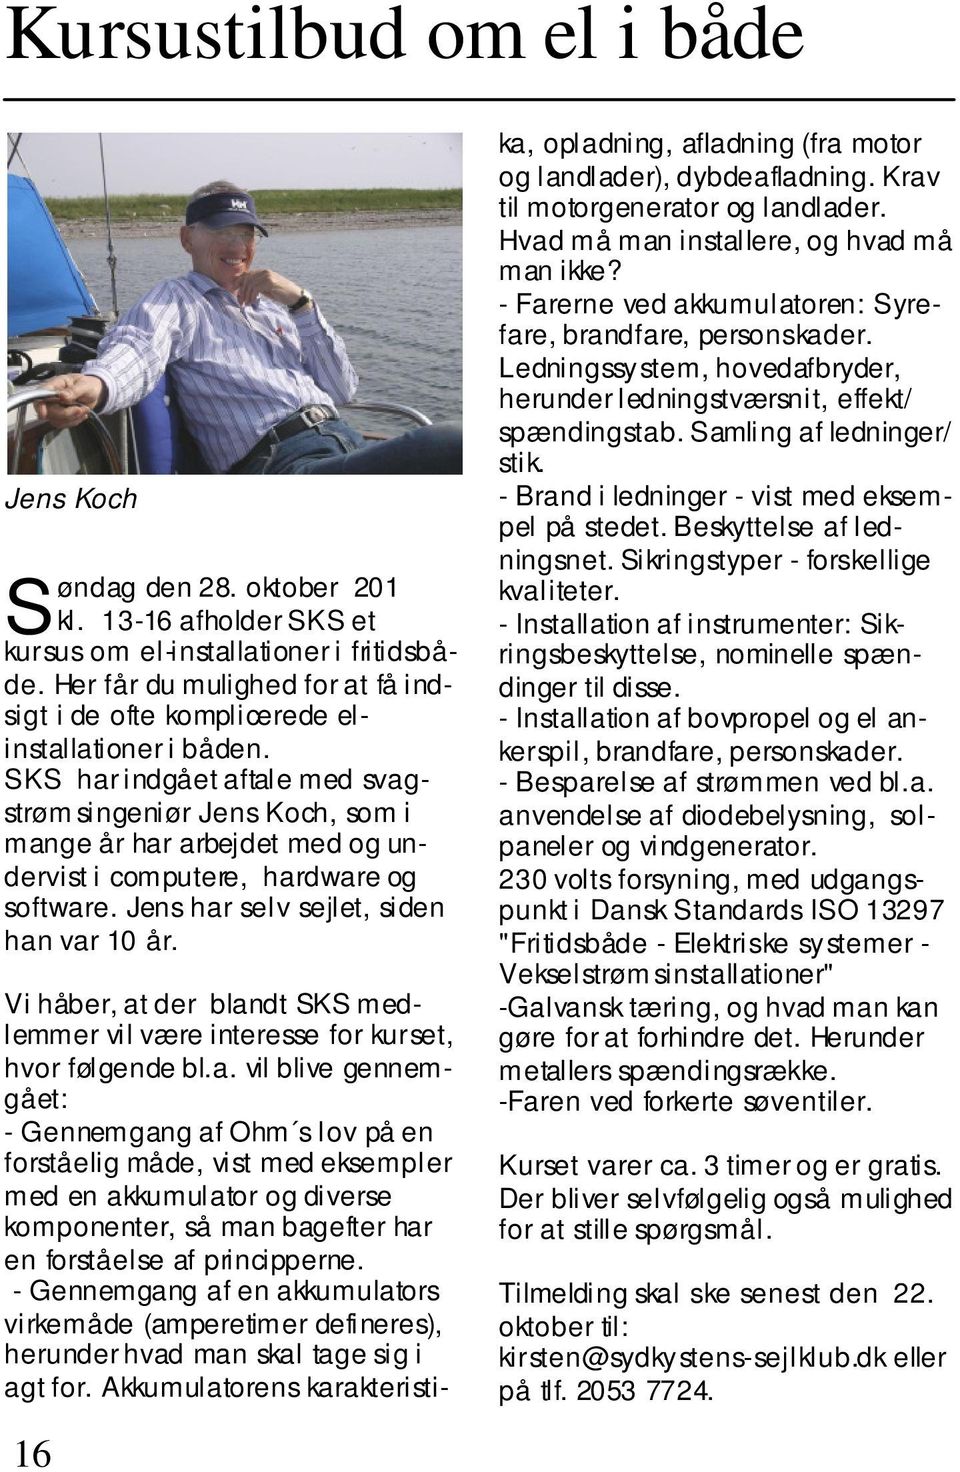 SKS har indgået aftale med svagstrøm singeniør Jens Koch, som i mange år har arbejdet med og undervist i computere, hardware og software. Jens har selv sejlet, siden han var 10 år.